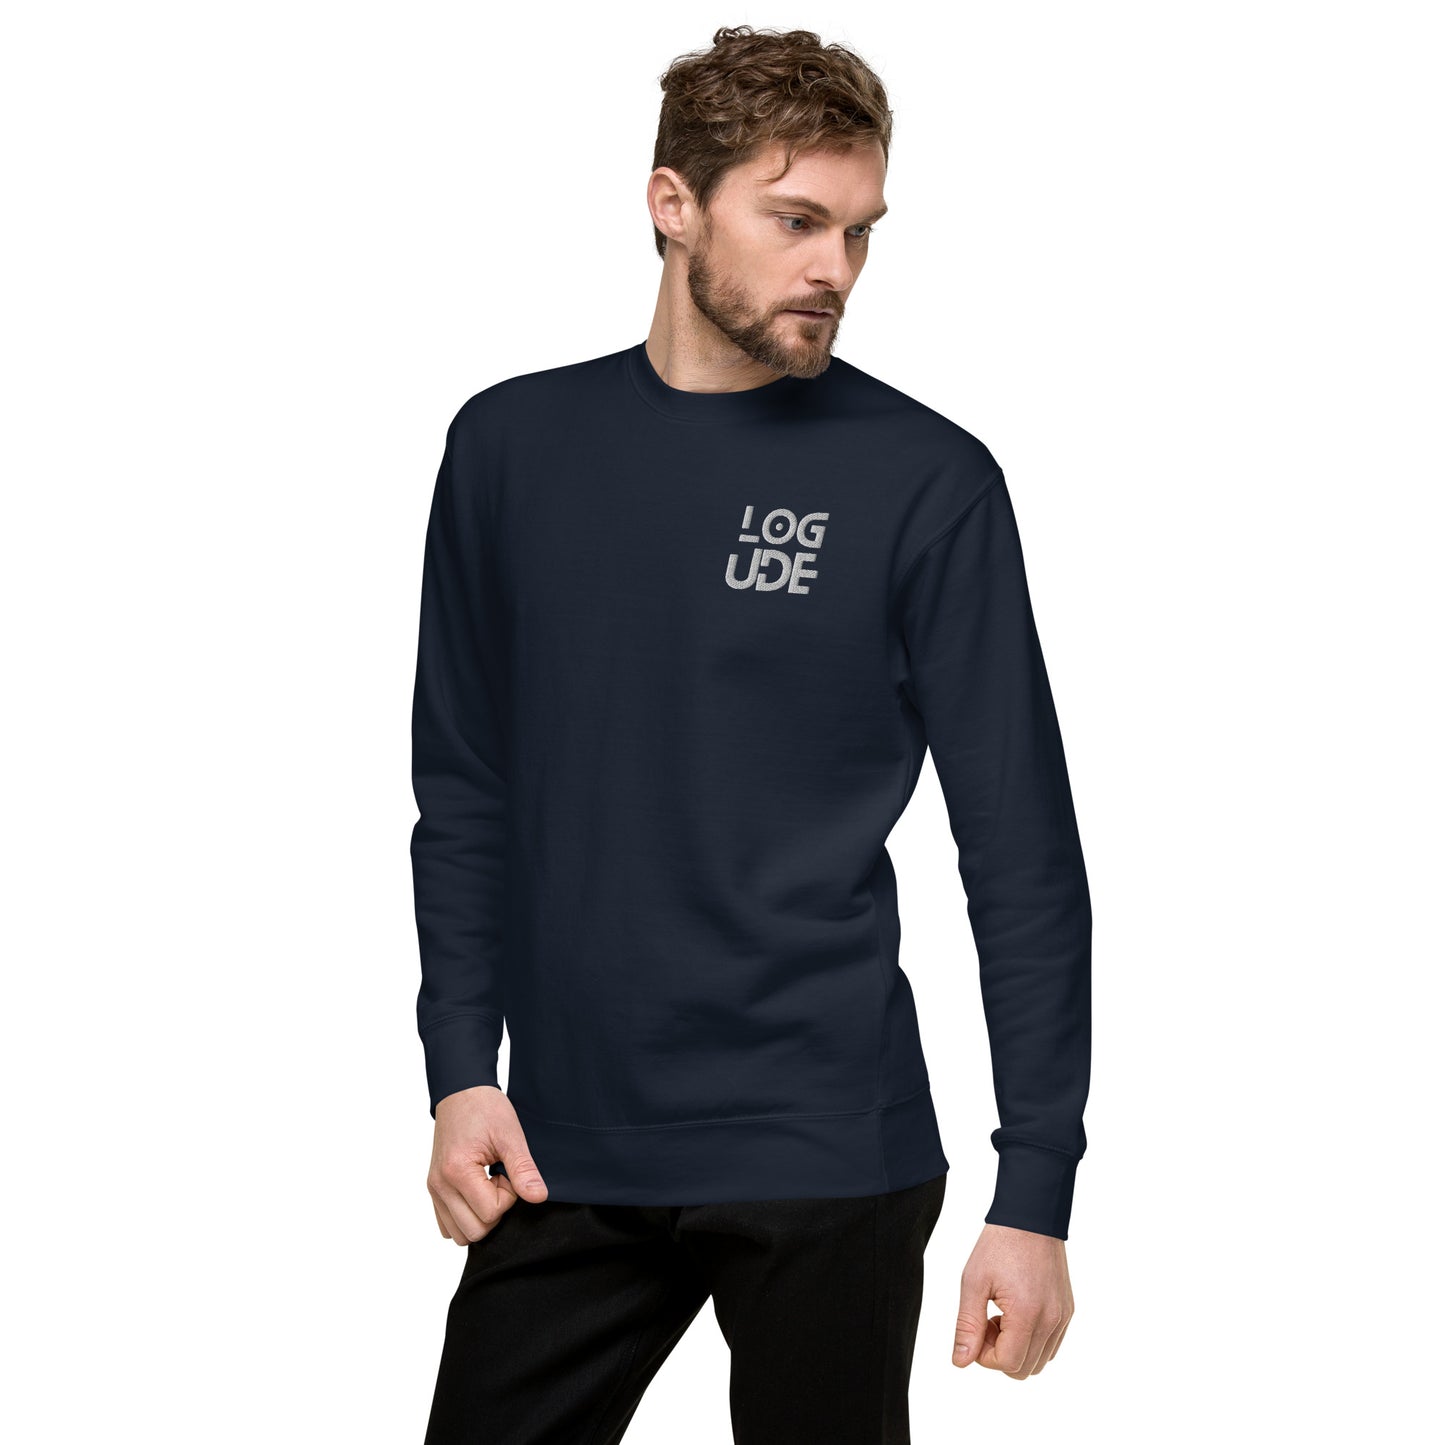 Logude Men Premium Sweatshirt